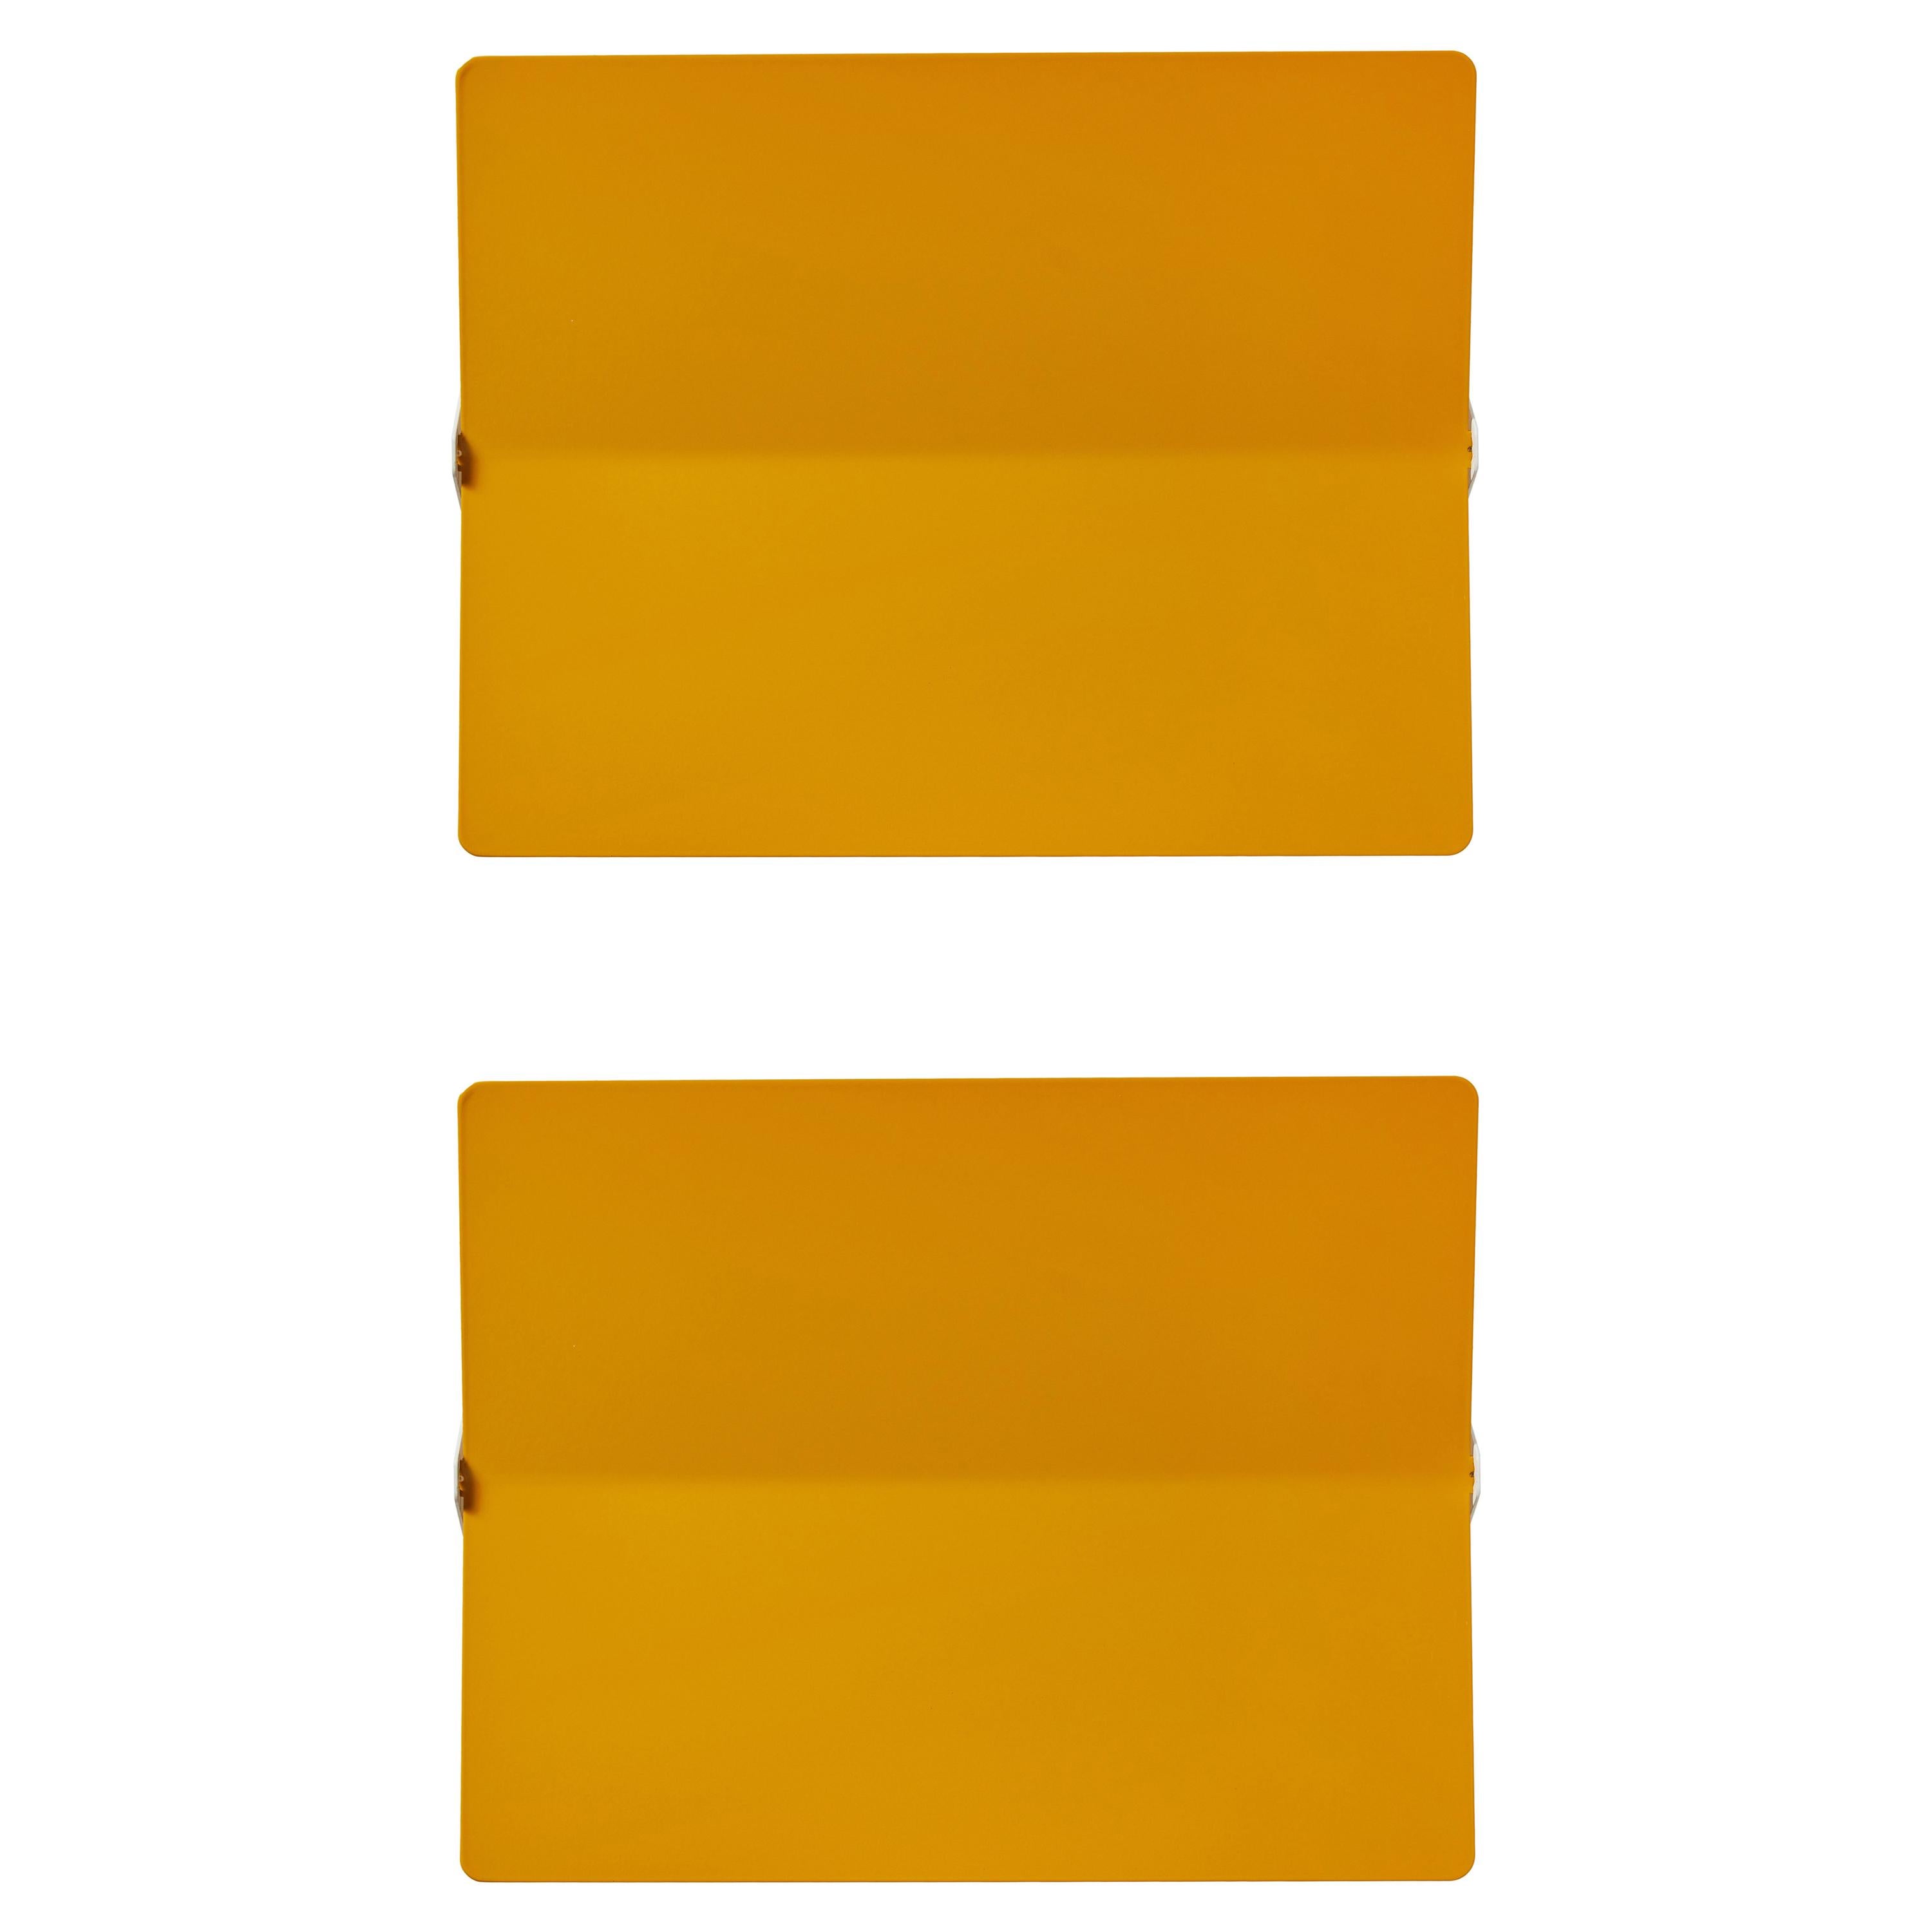 Grande applique 'Applique À Volet Pivotant Plié' de Charlotte Perriand en jaune